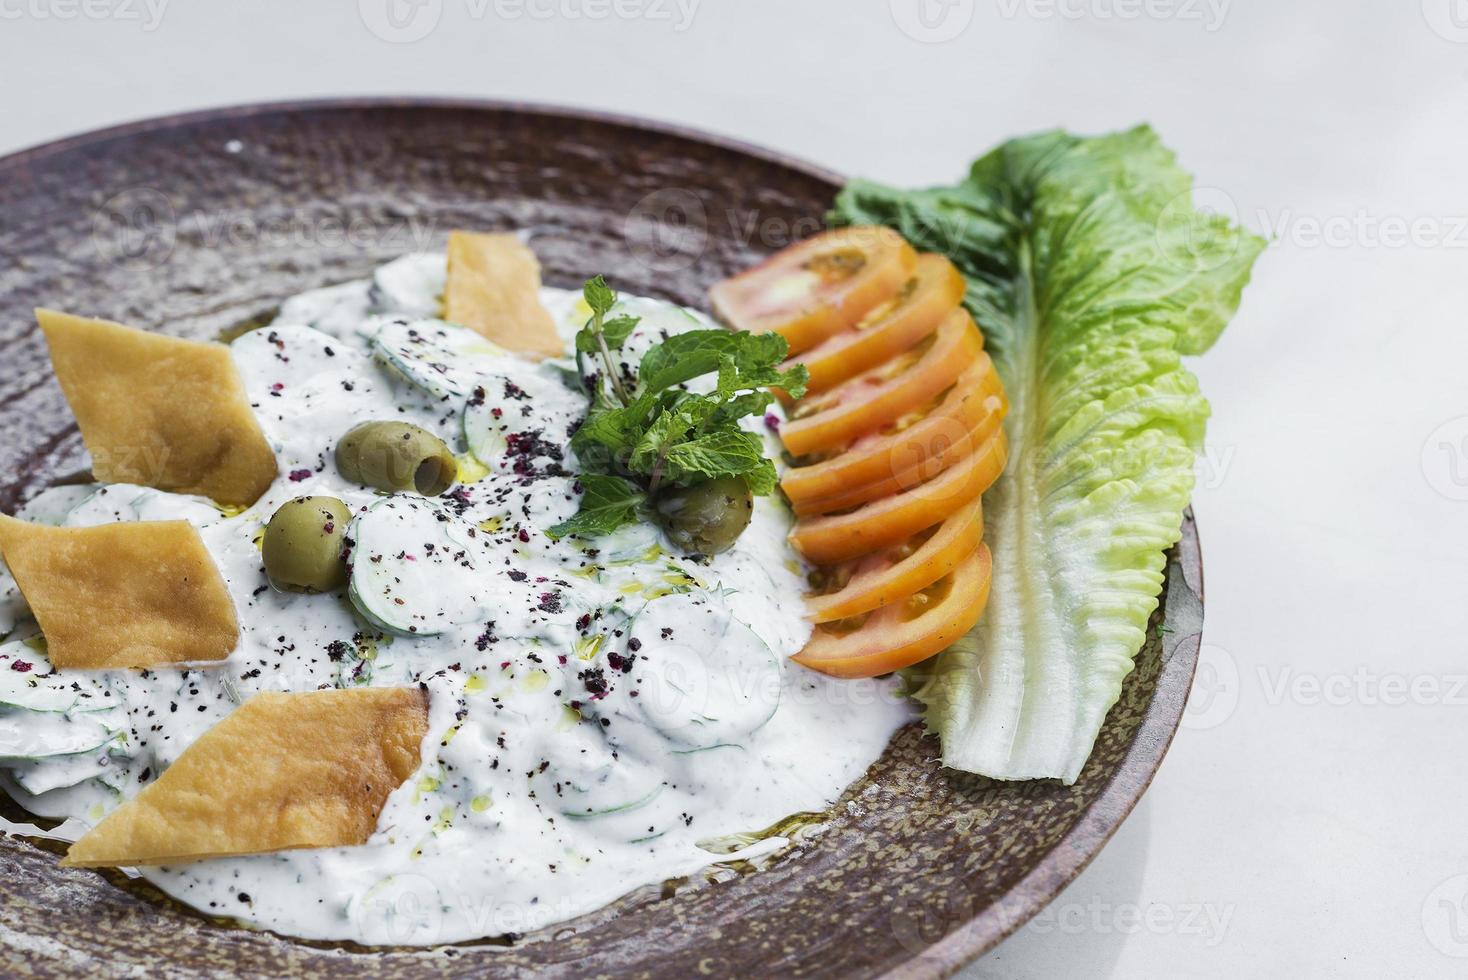 Laban yogur fresco-pepino medio oriente libanés dip snack comida de arranque foto